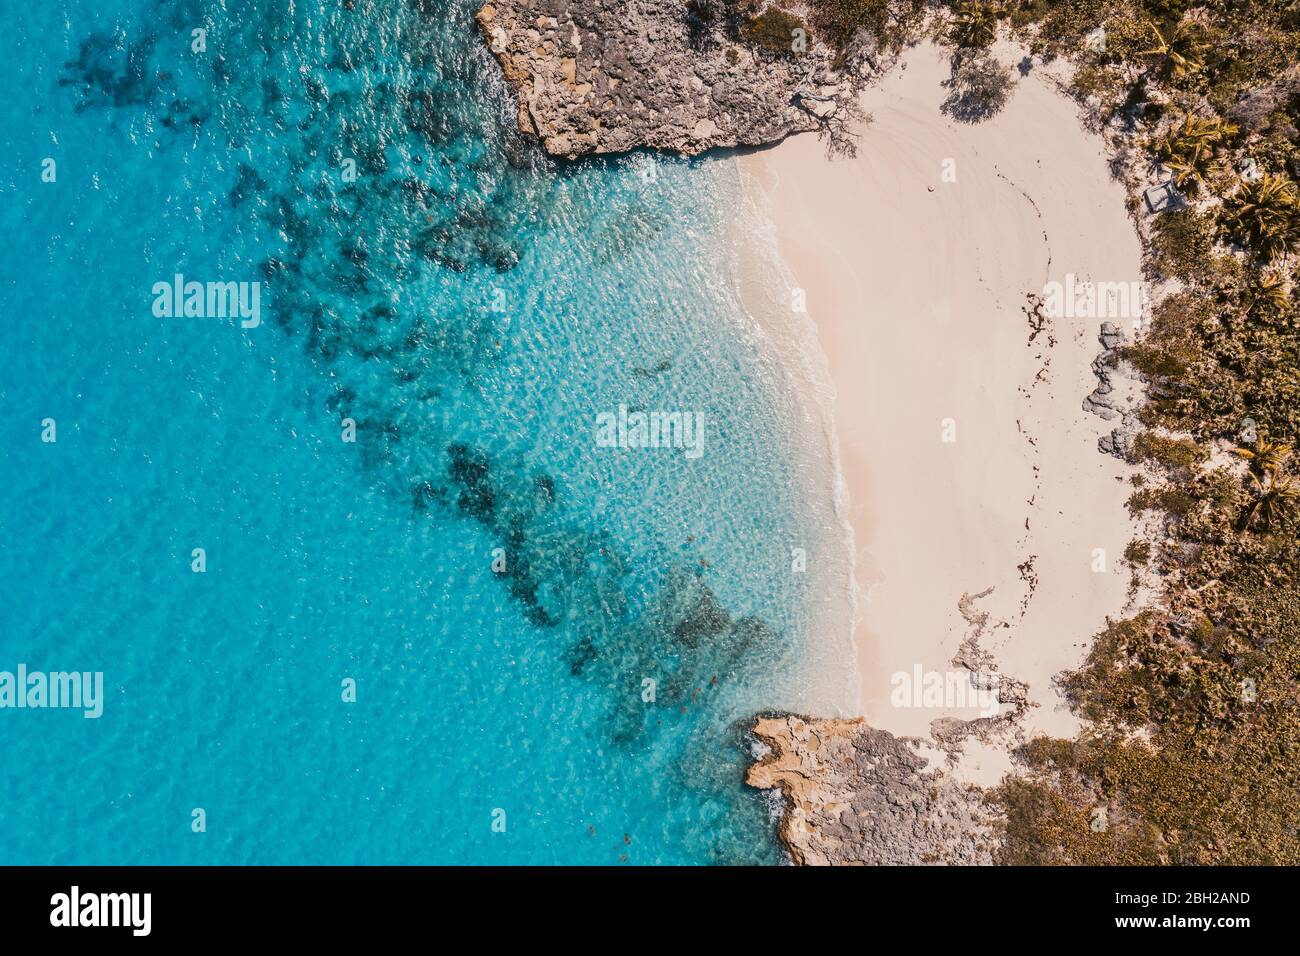 Caribbean, Bahamas, Exuma, Drone view of Pretty Molly Beach Stock Photo